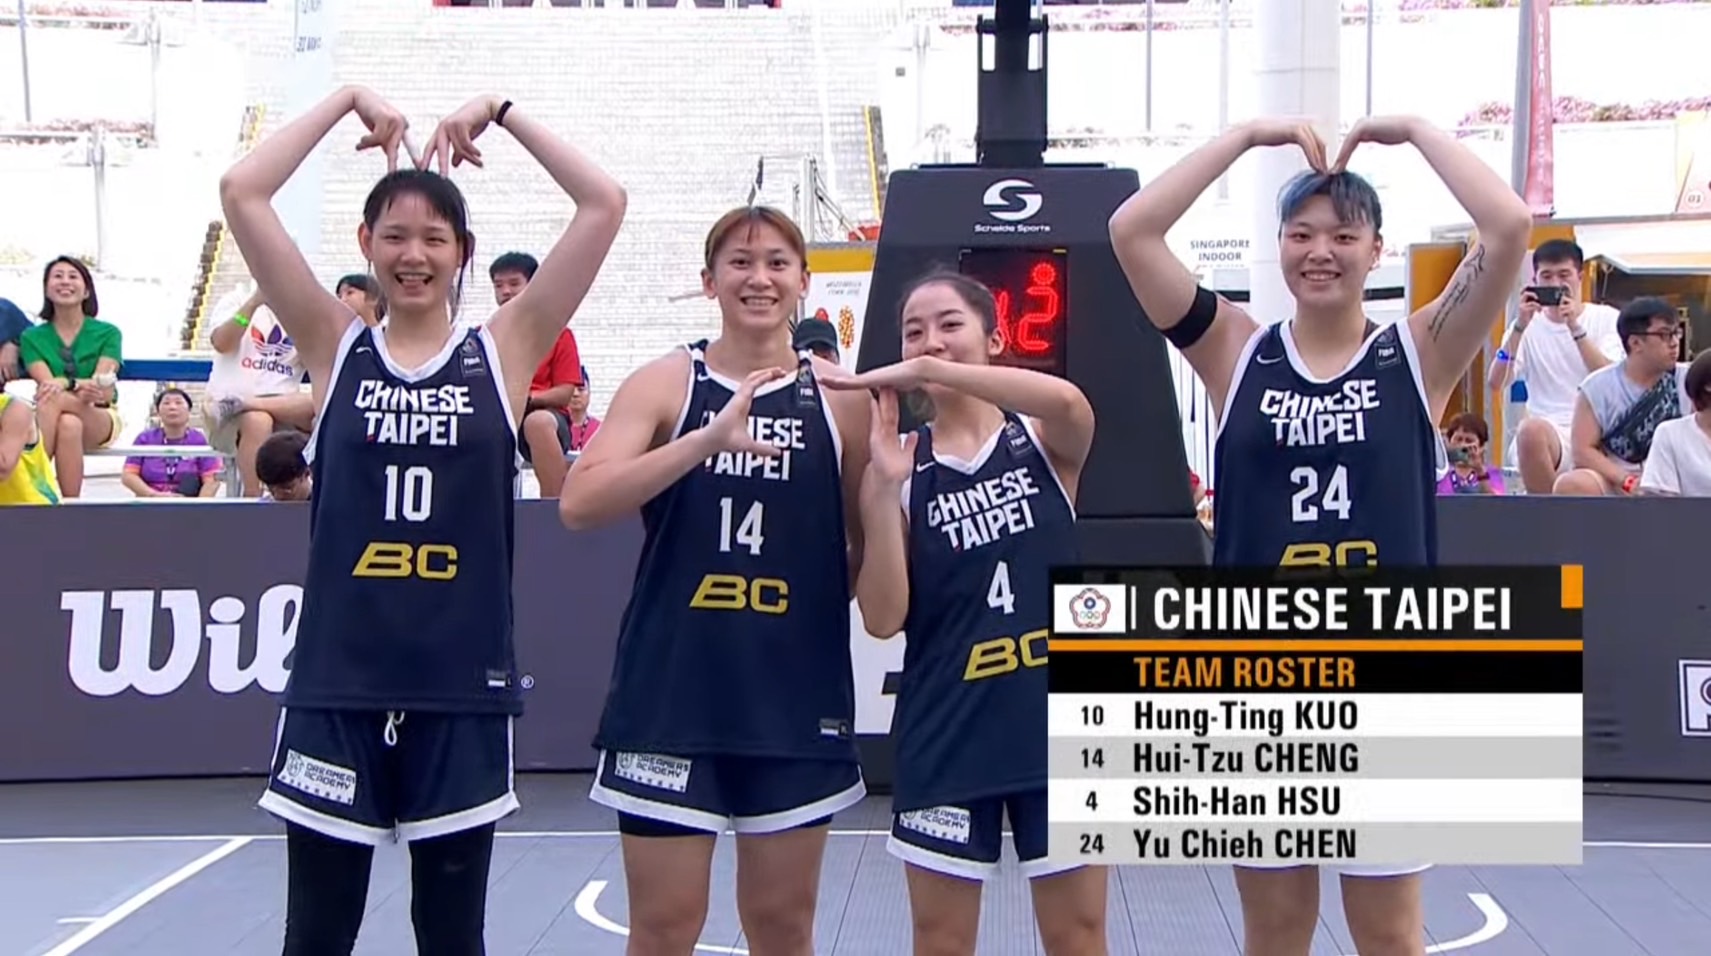 中华女子3X3代表队季军战不敌蒙古。图自FIBA 3x3 Youtube